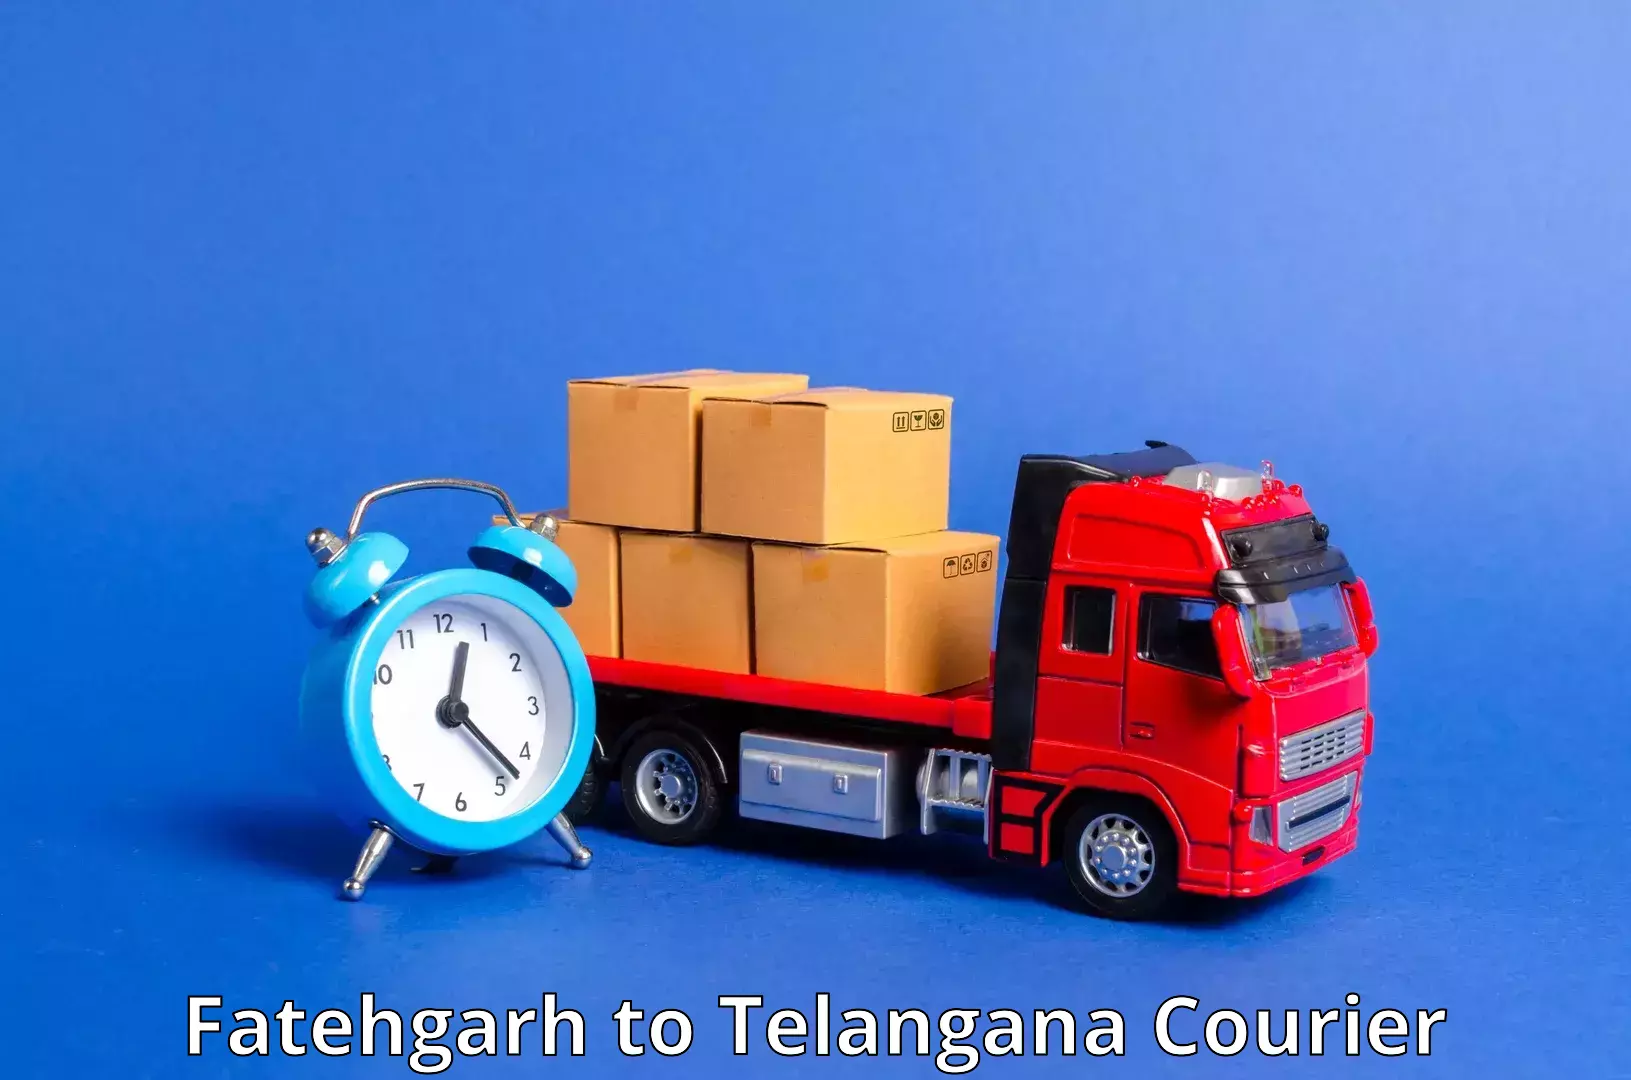 Tech-enabled shipping Fatehgarh to Kacheguda